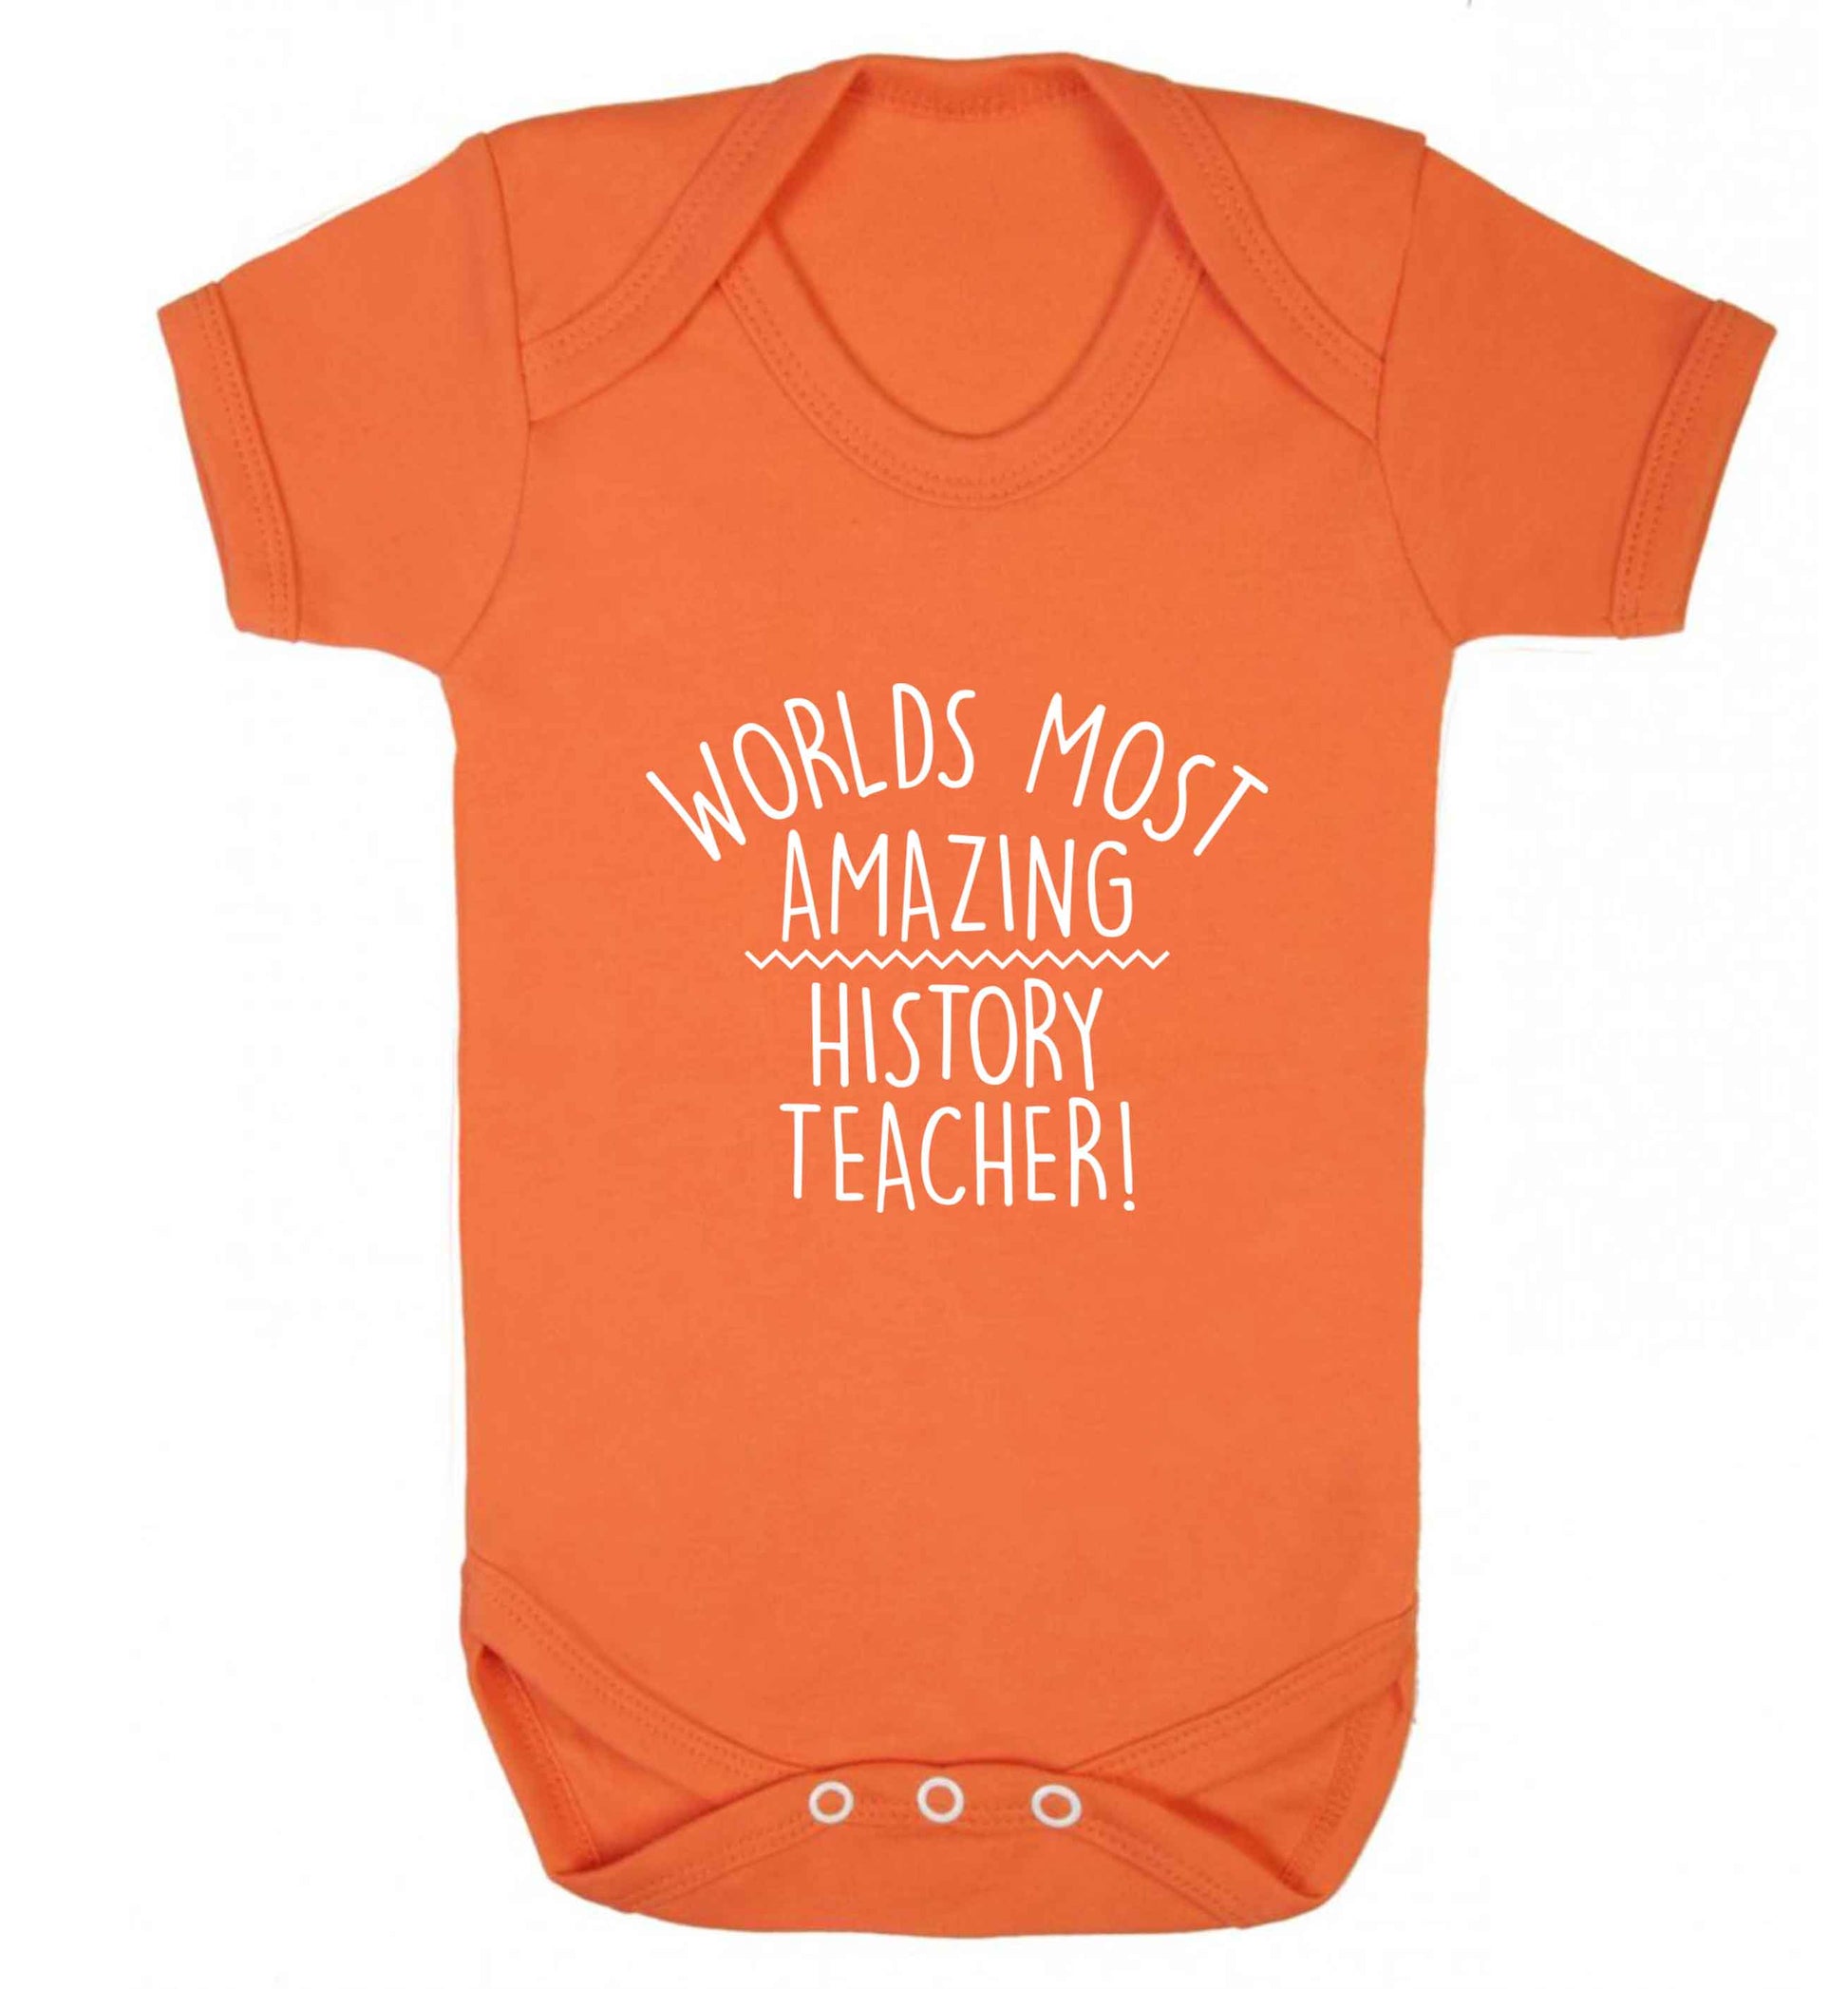 Worlds most amazing History teacher baby vest orange 18-24 months